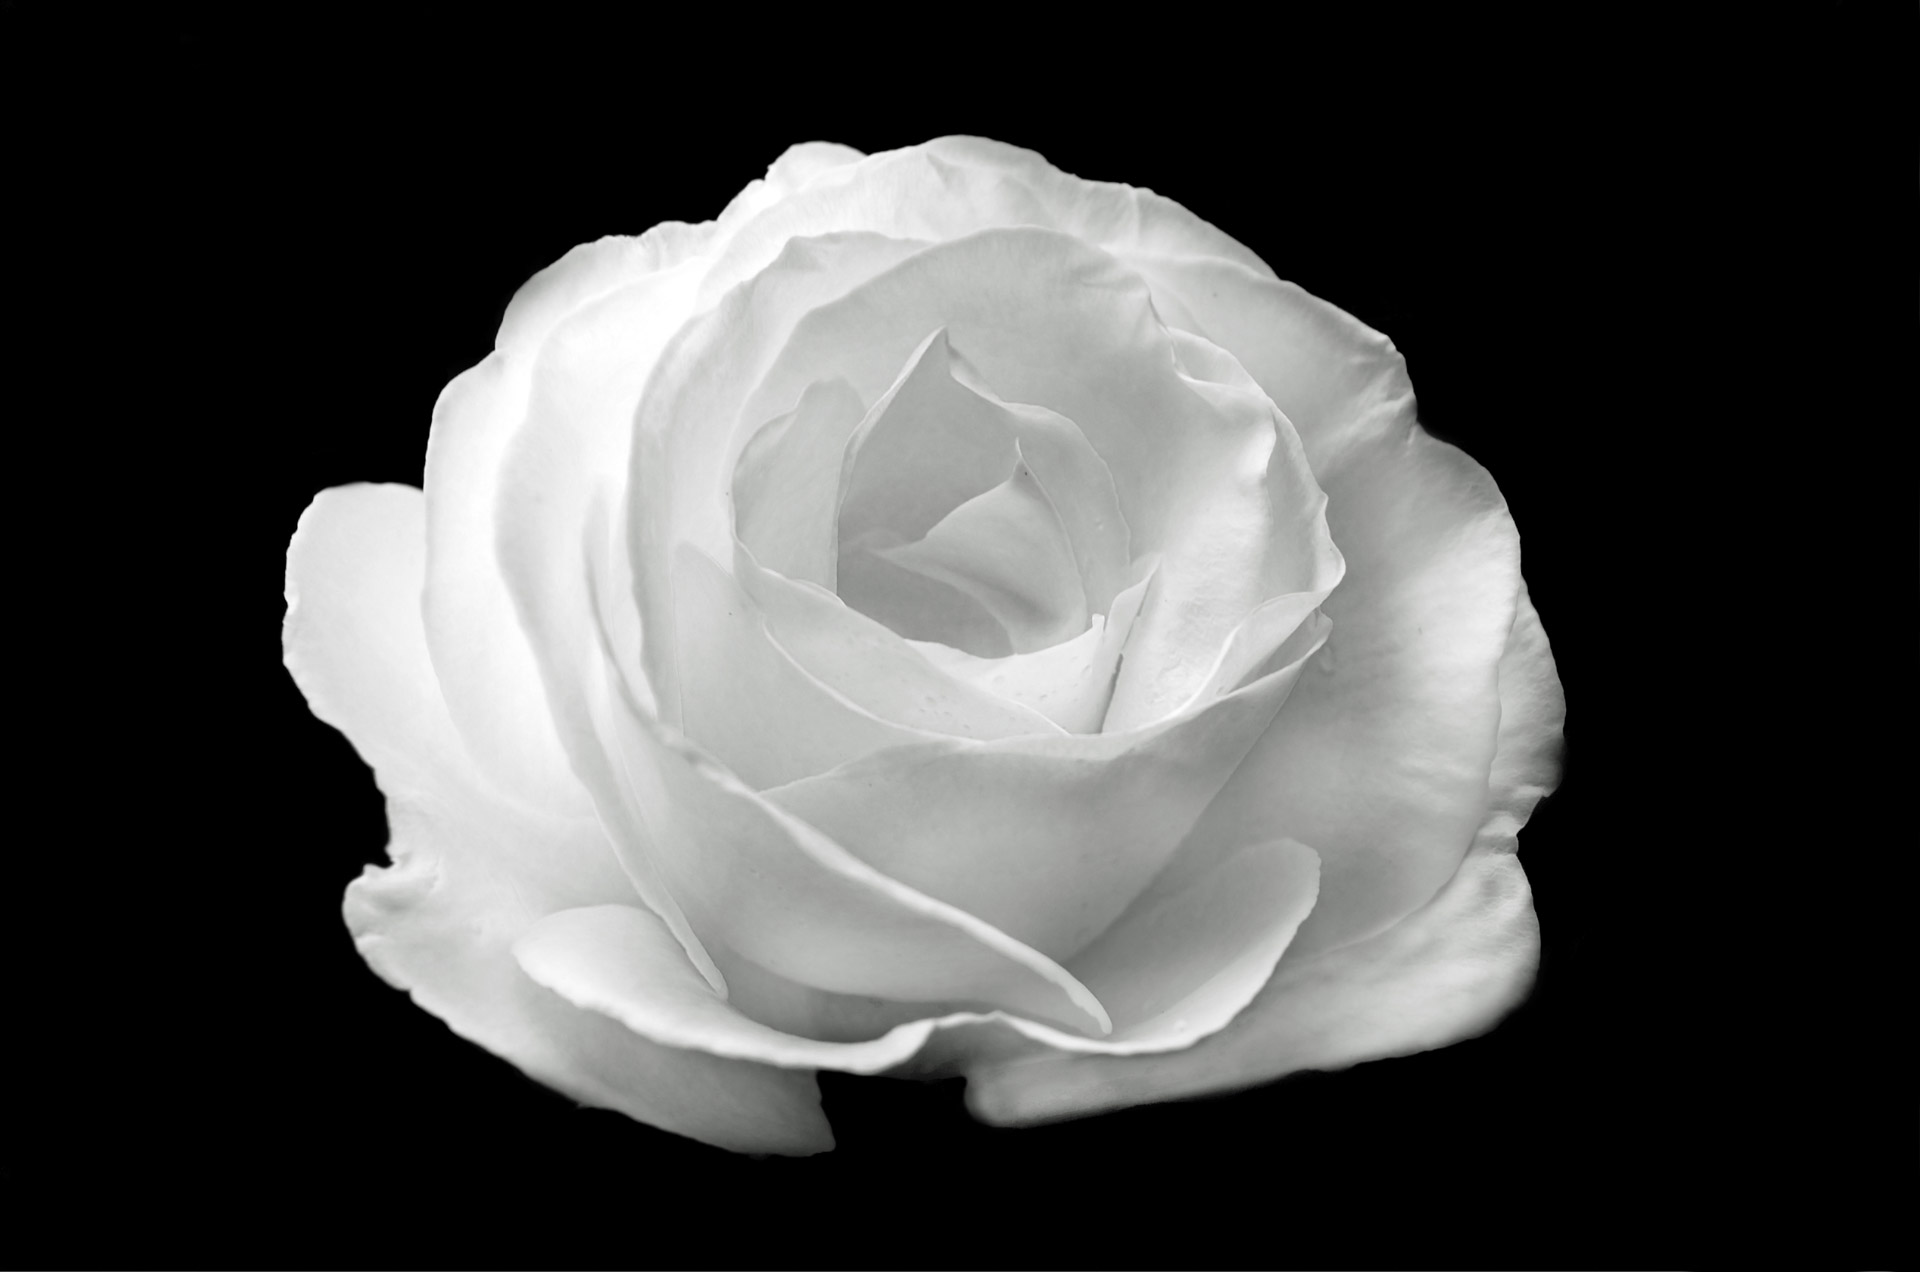 white-rose-on-the-black-background.jpg